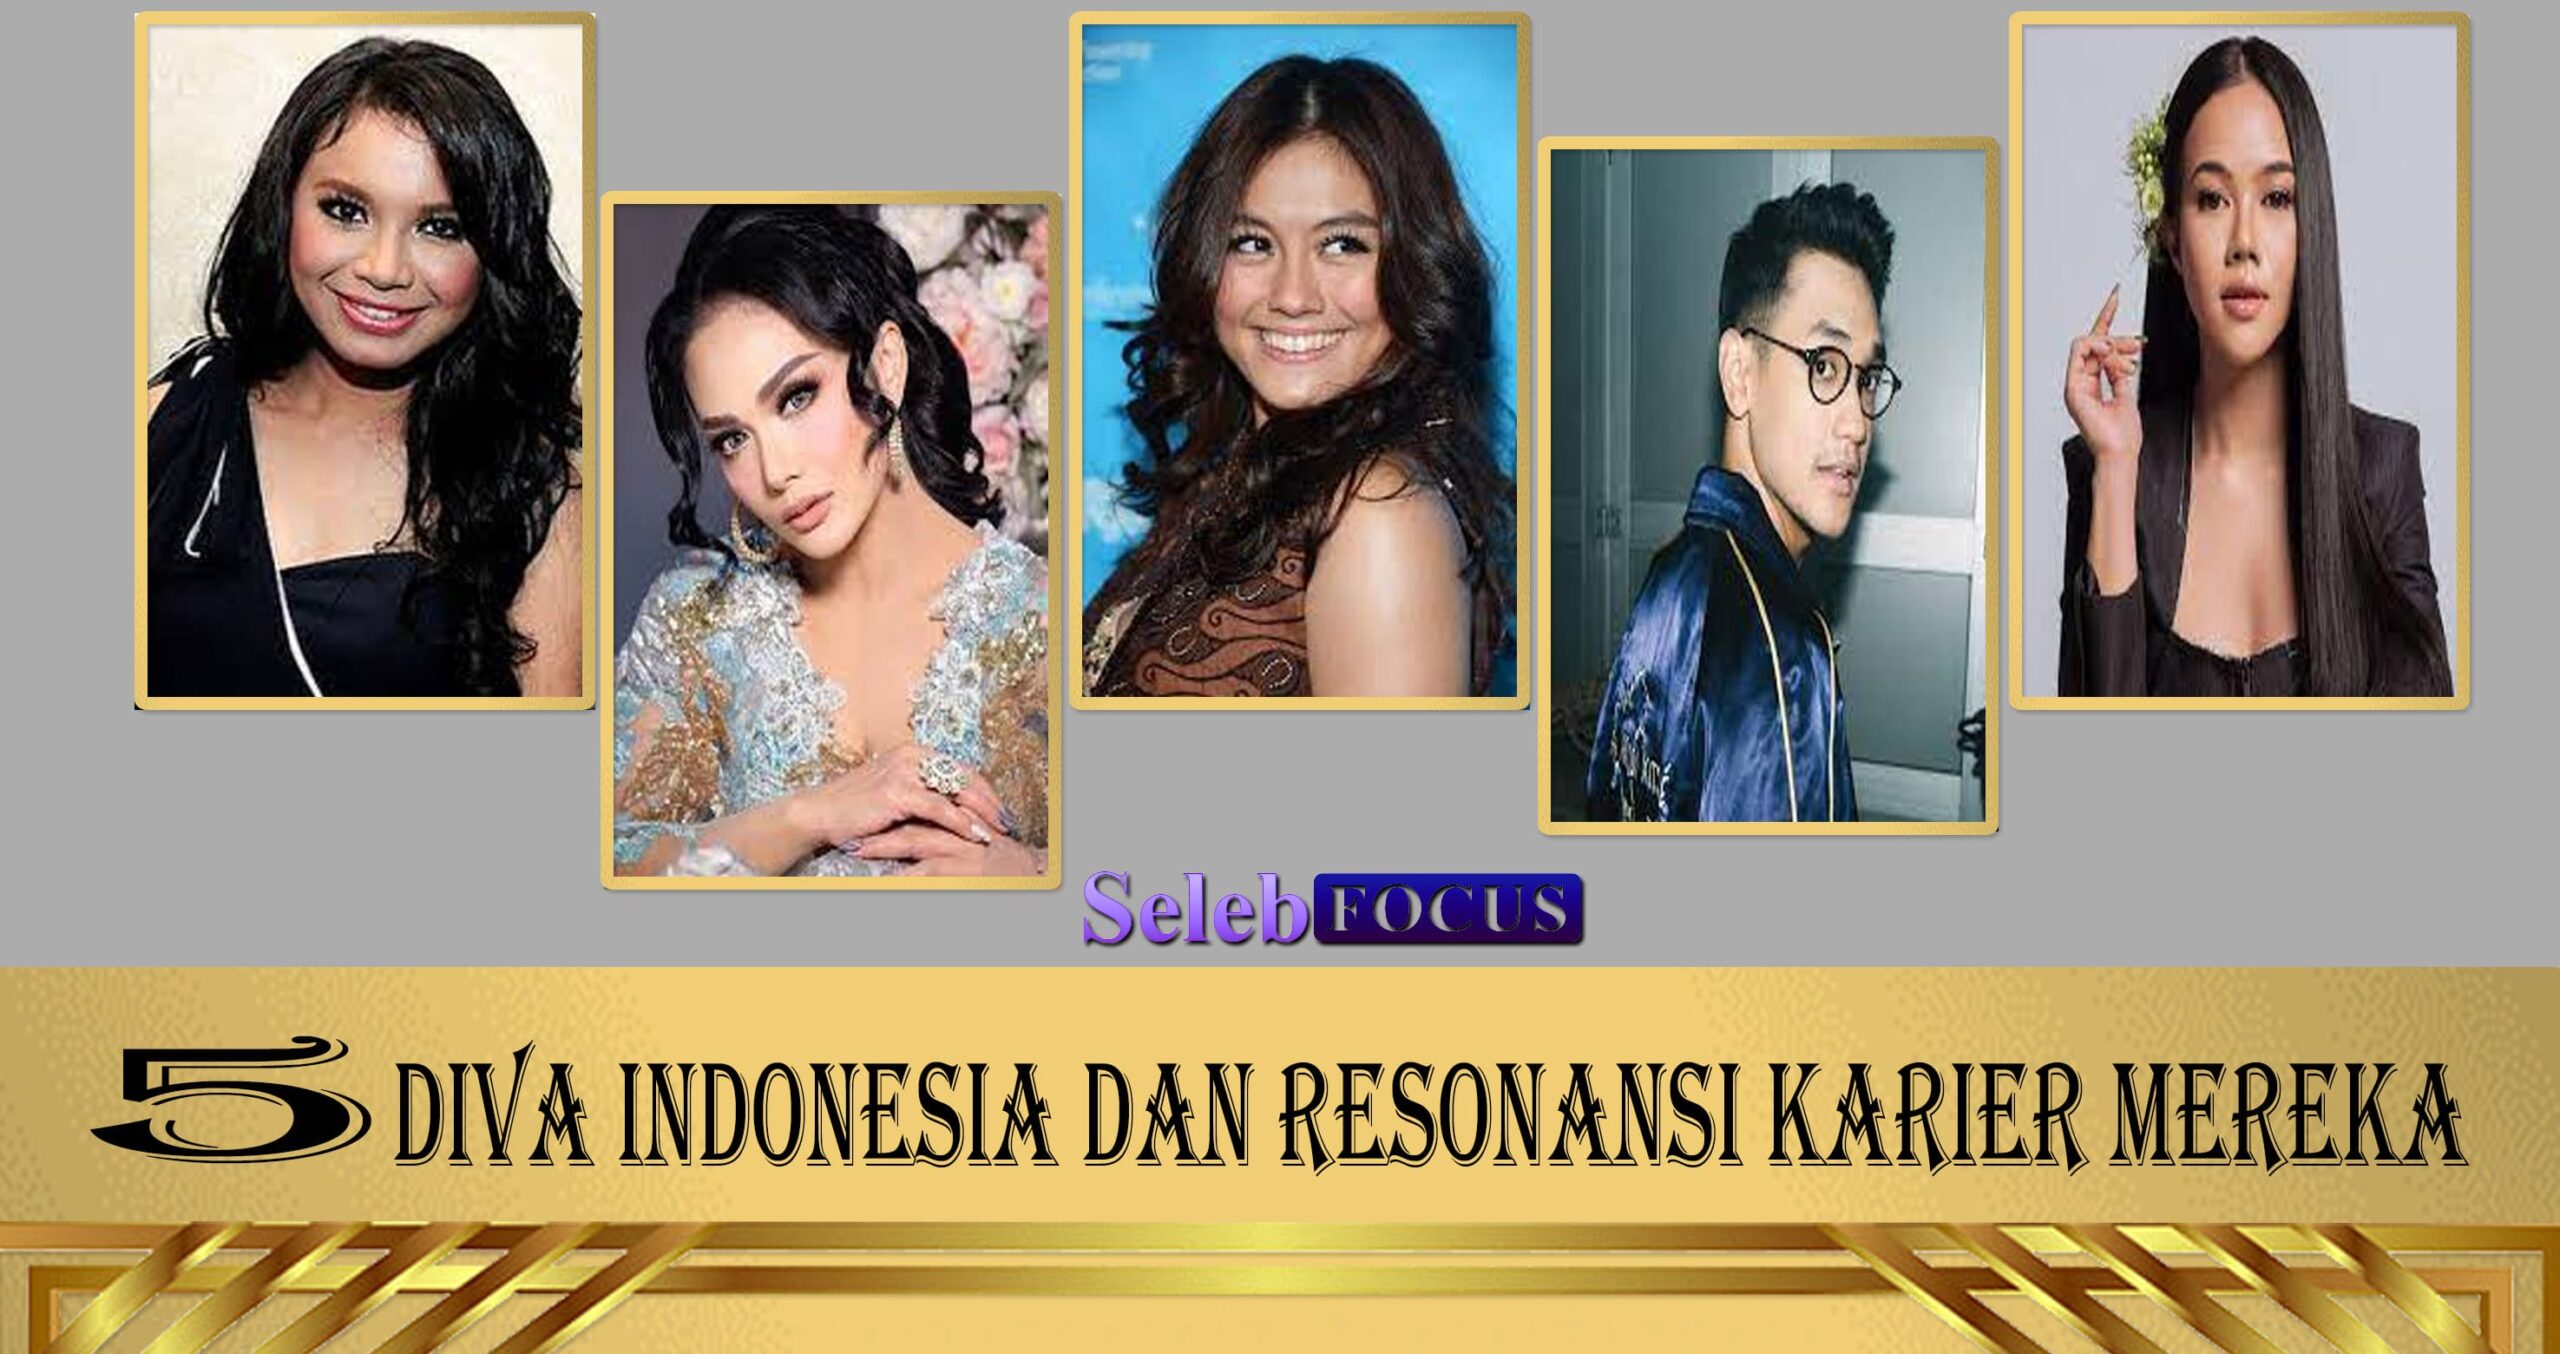 5 Diva Indonesia